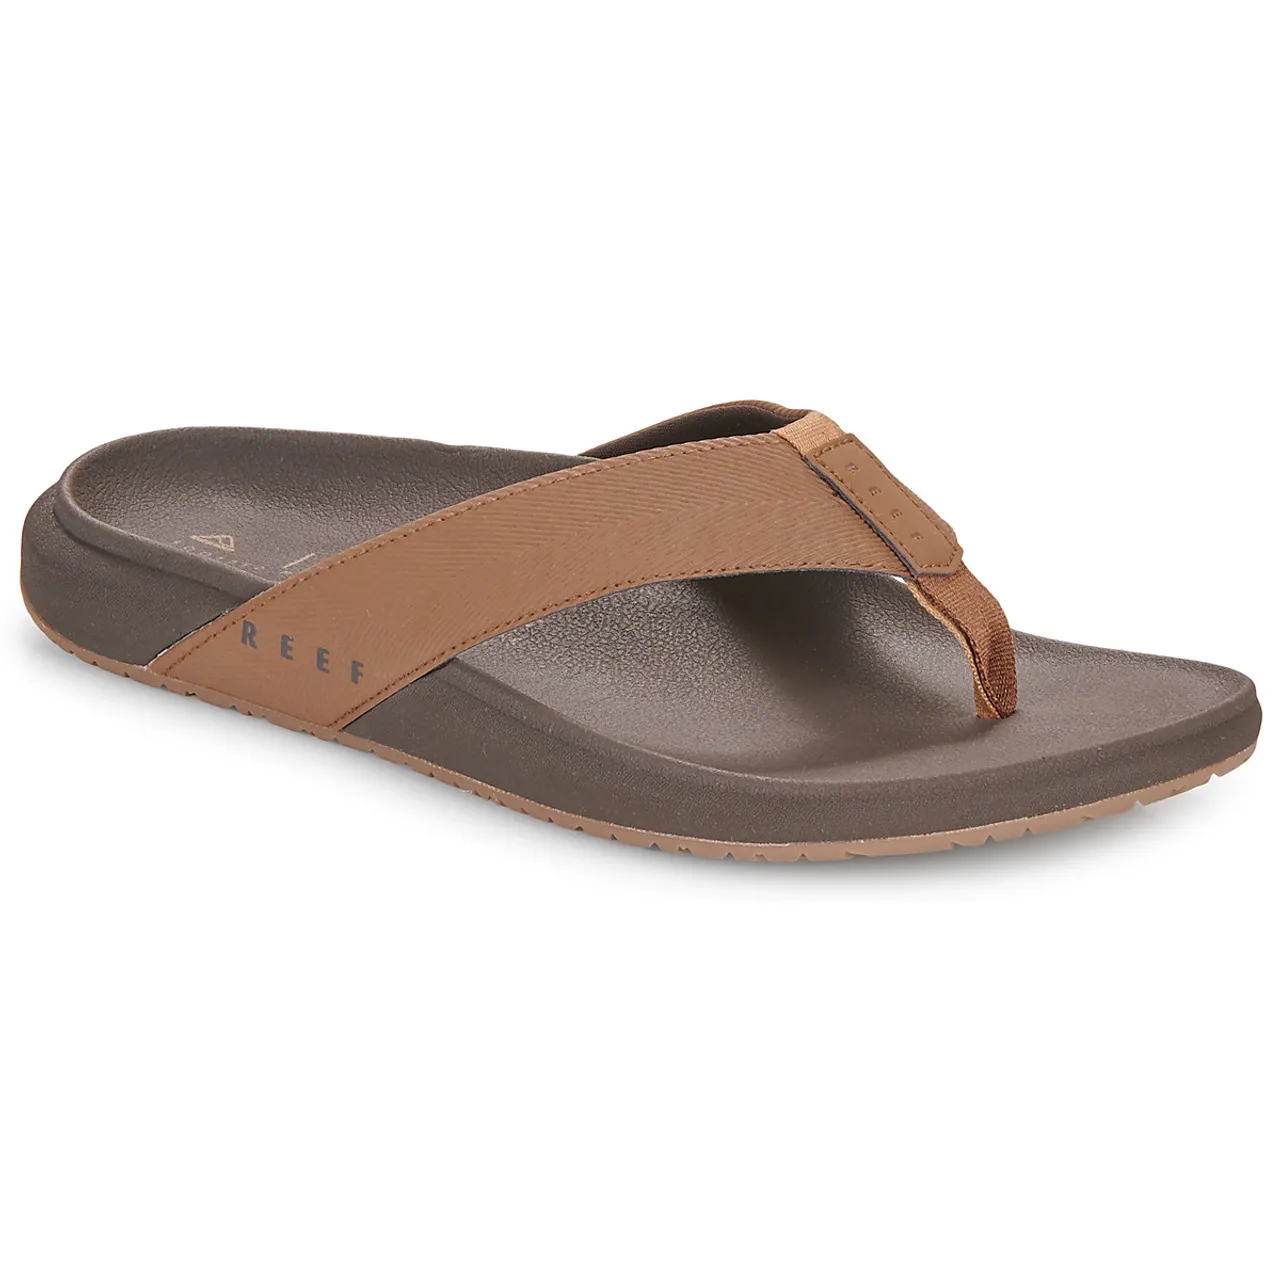 Reef  THE RAGLAN  men's Flip flops / Sandals (Shoes) in Brown